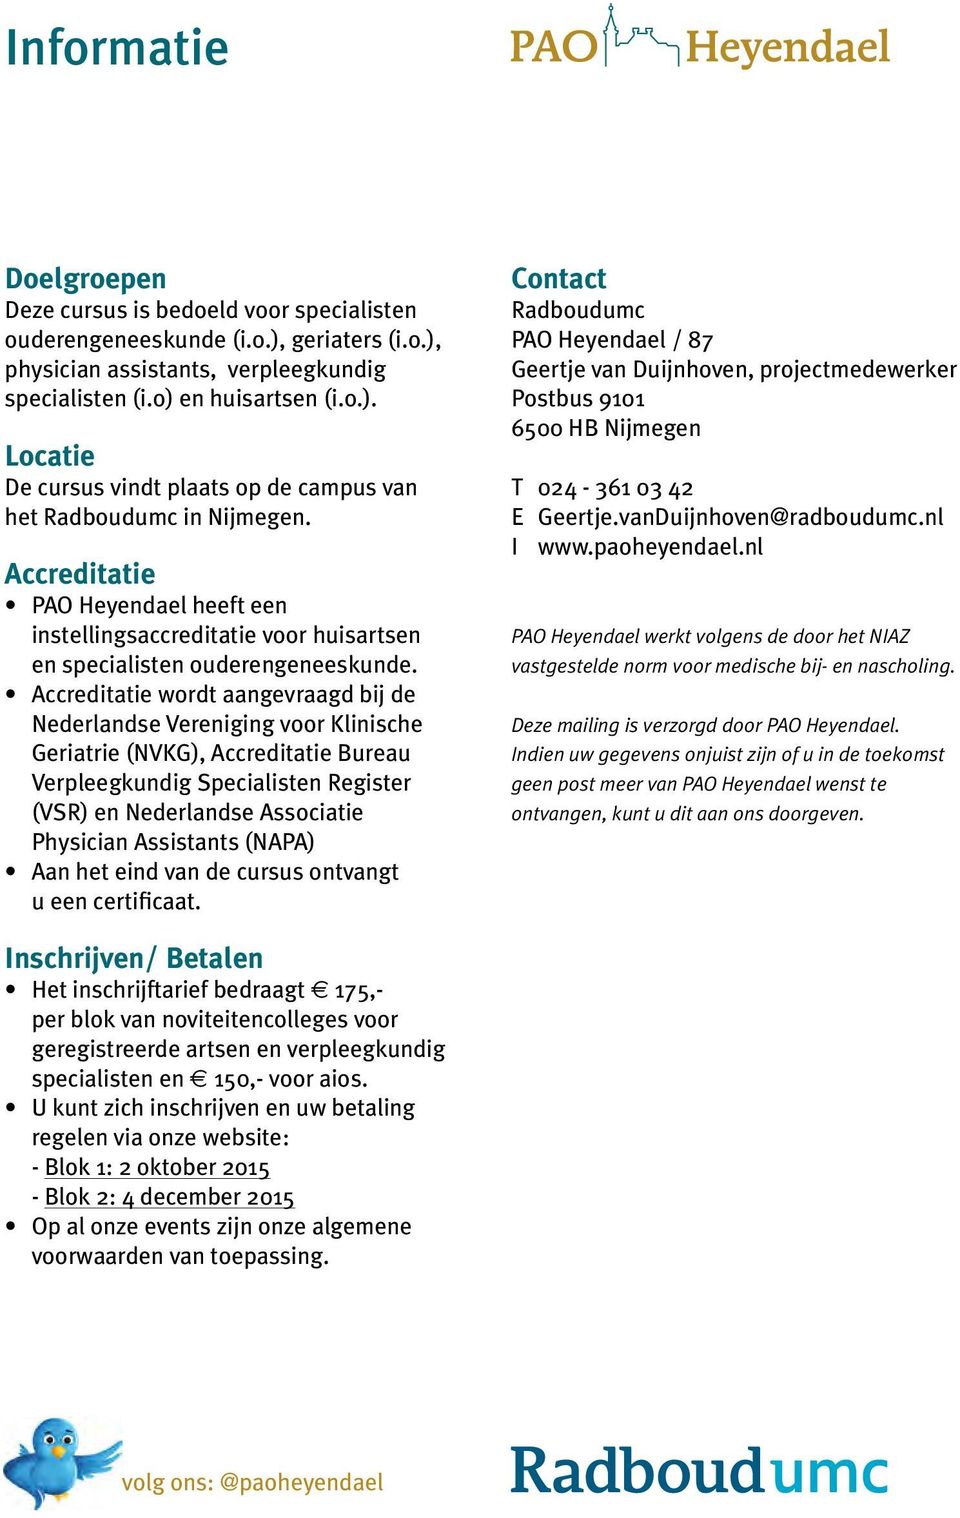 Accreditatie wordt aangevraagd bij de Nederlandse Vereniging voor Klinische Geriatrie (NVKG), Accreditatie Bureau Verpleegkundig Specialisten Register (VSR) en Nederlandse Associatie Physician